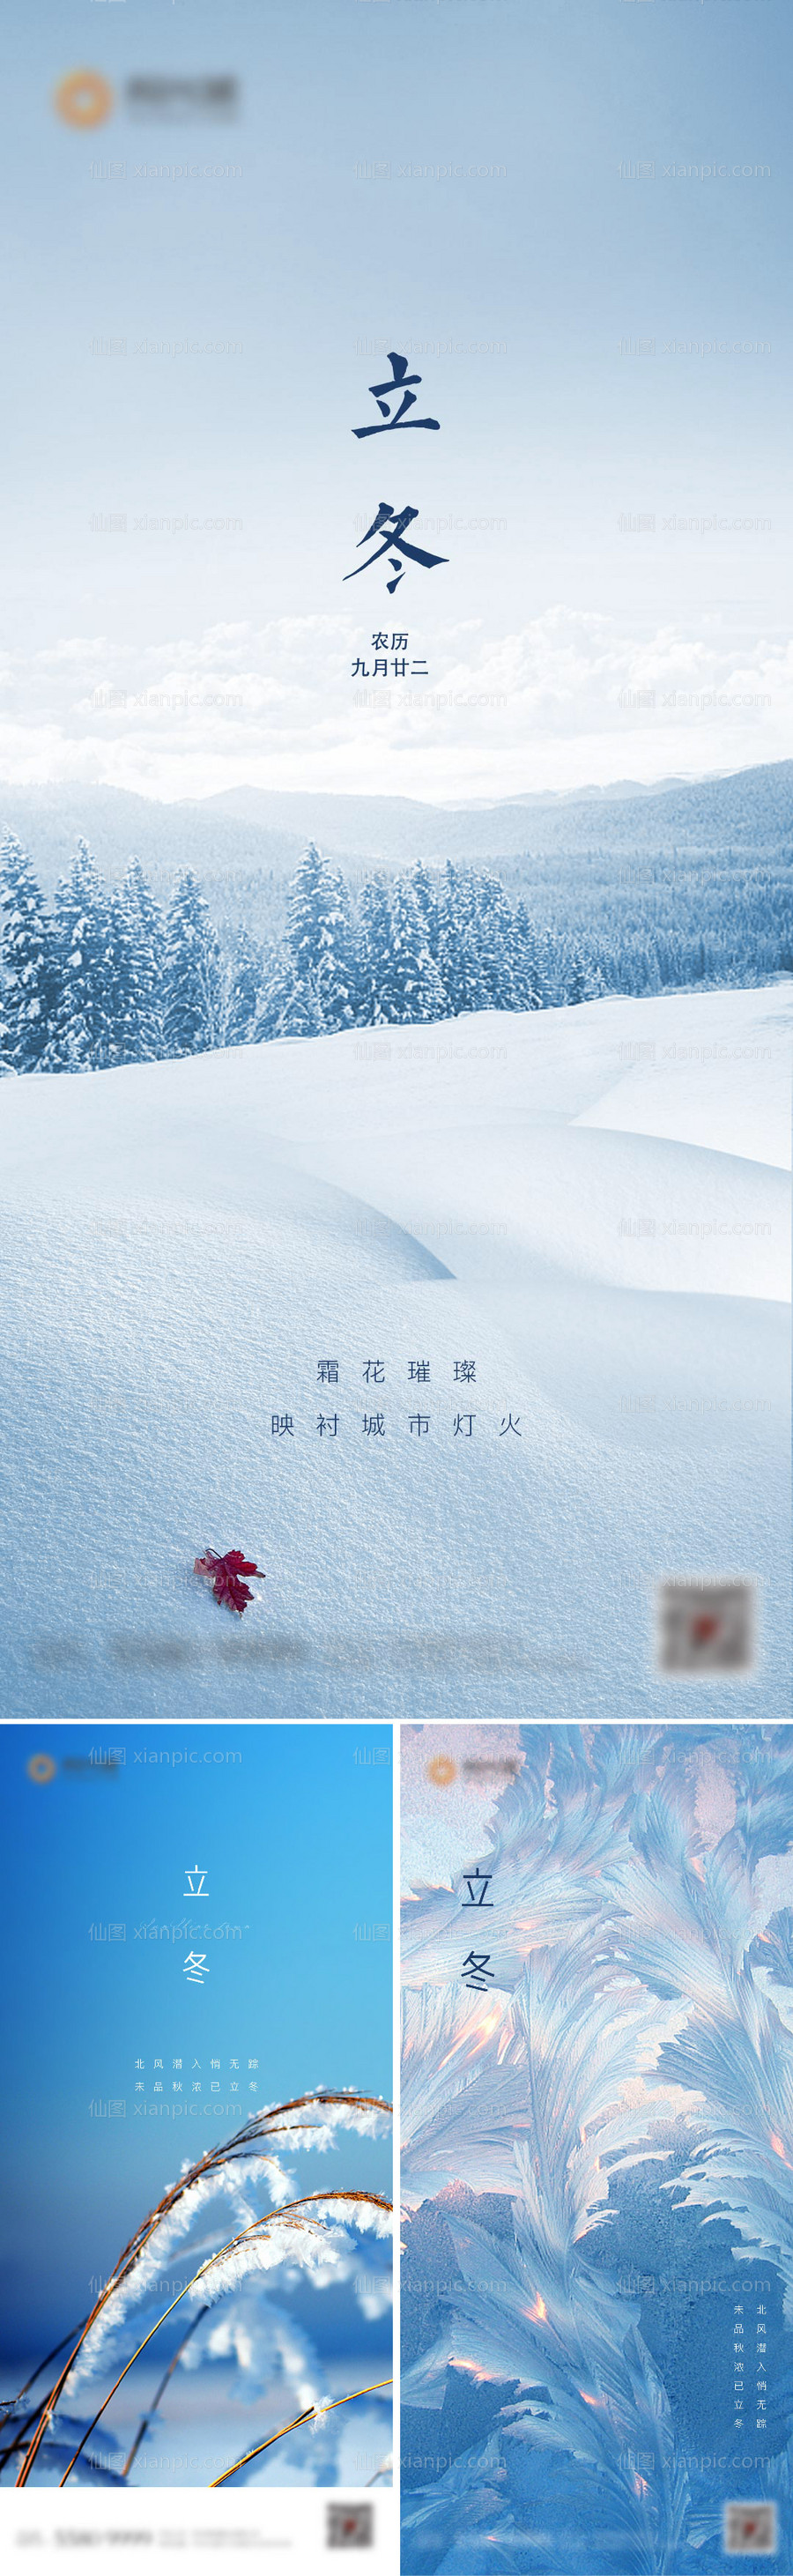 素材乐-地产二十四节气立冬系列移动端海报